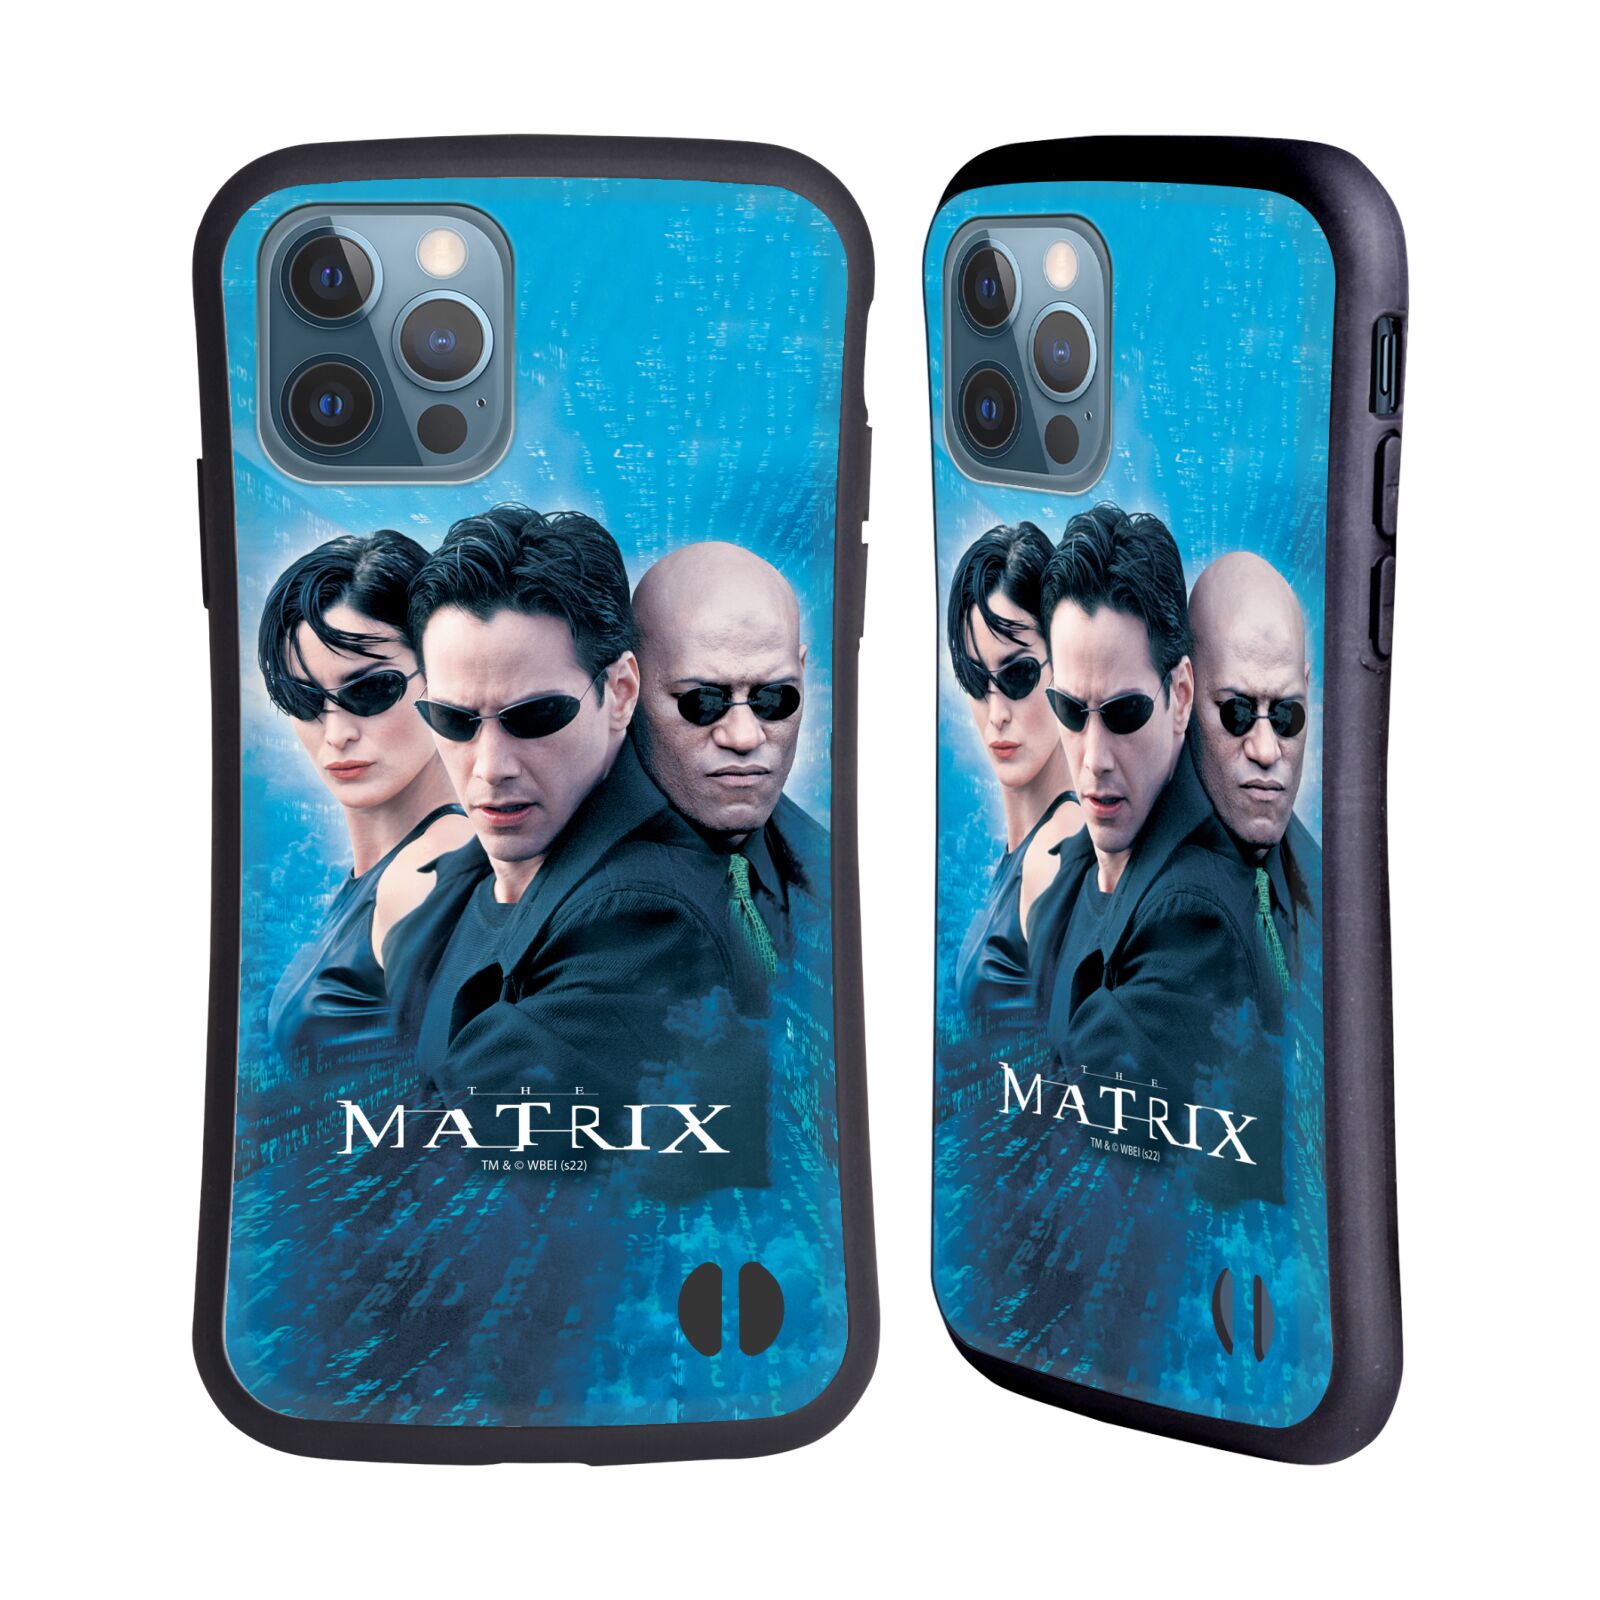 Odolný zadní obal pro mobil Apple iPhone 12 / iPhone 12 Pro - HEAD CASE - Matrix - Neo modré pozadí